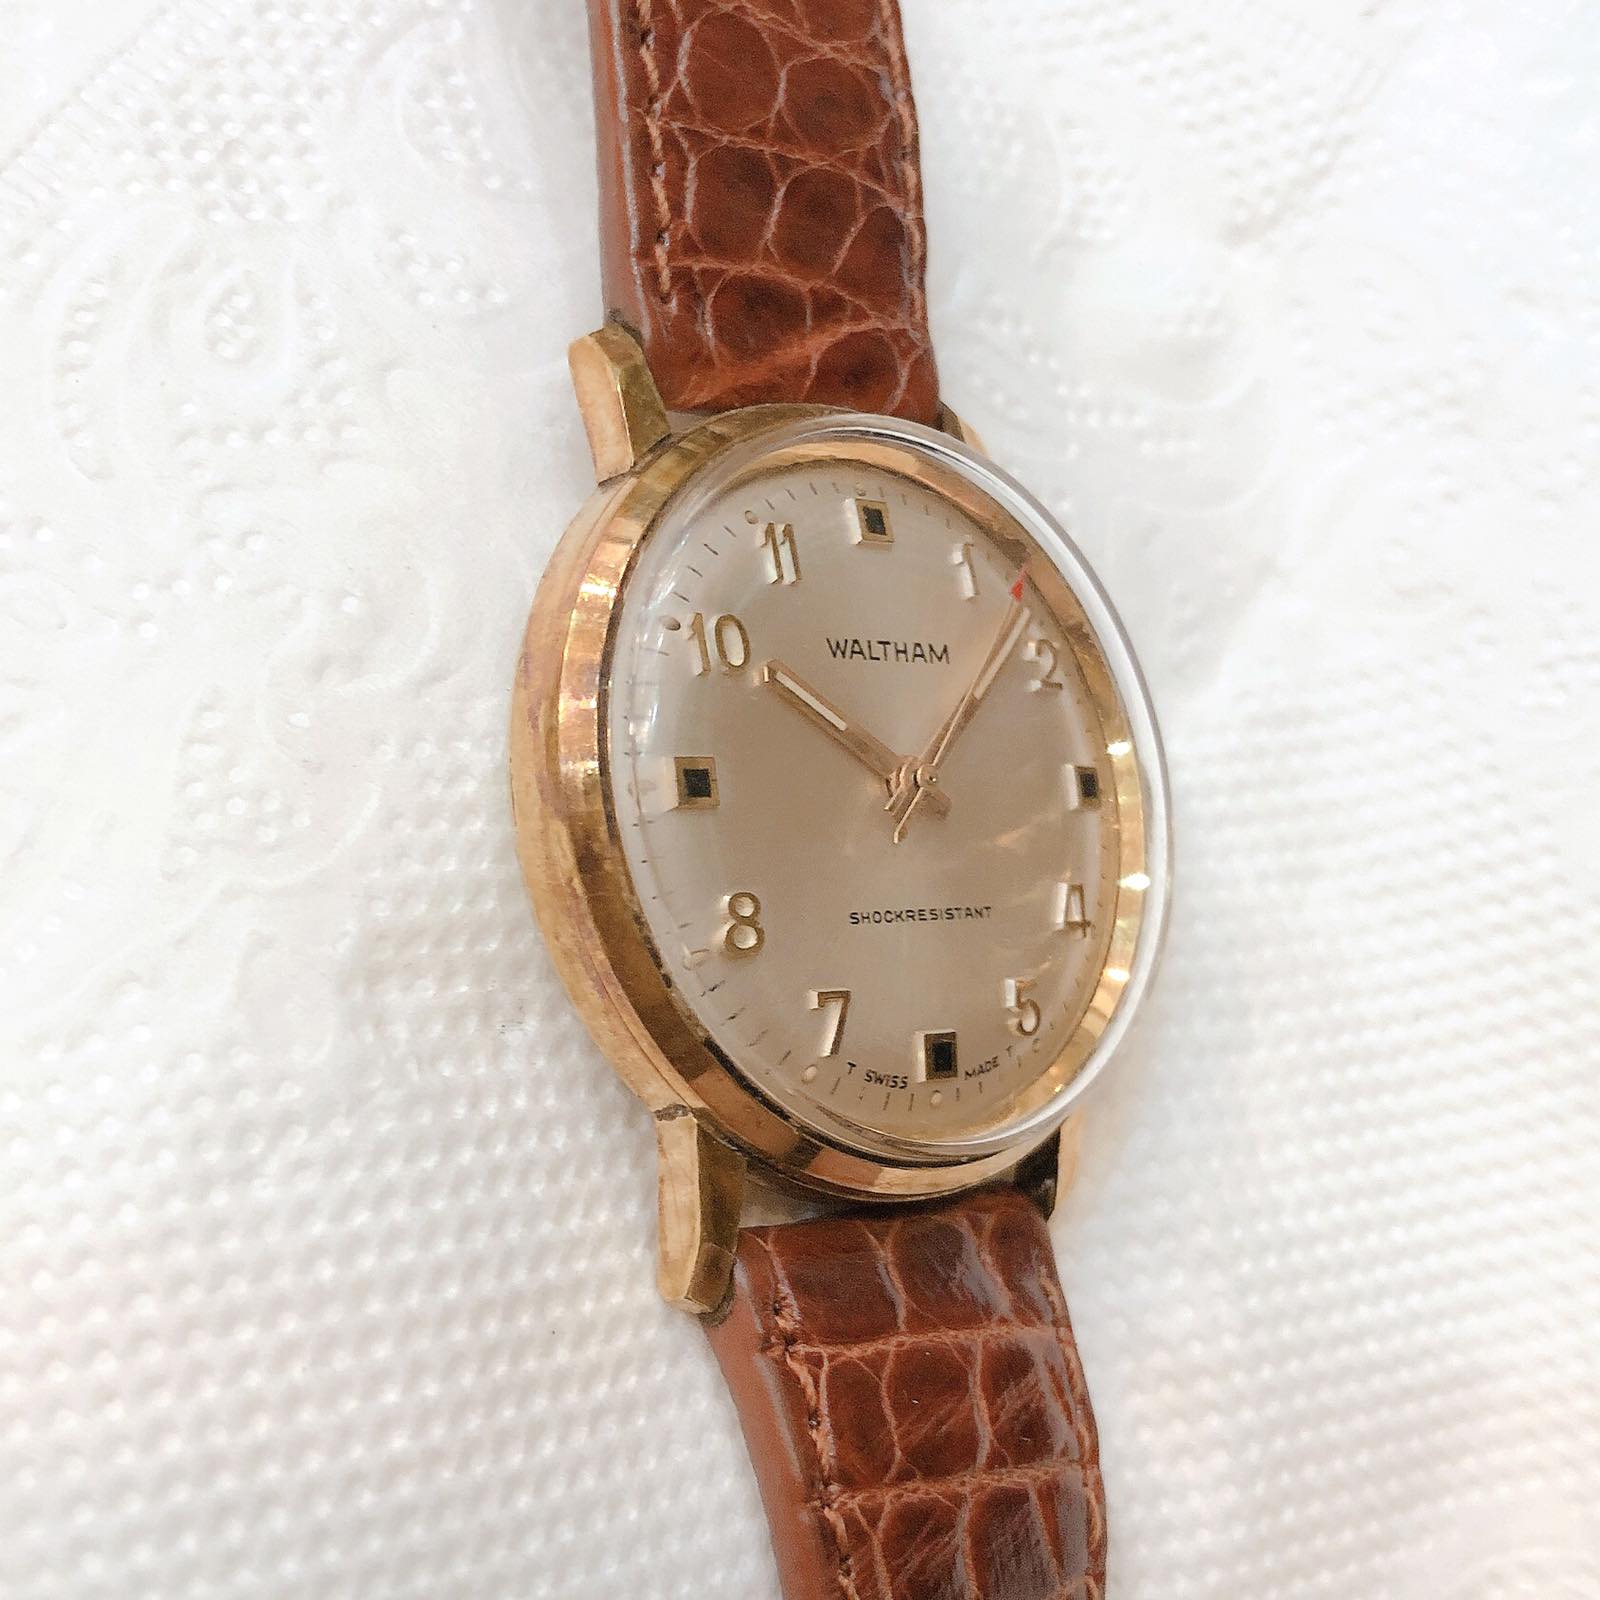 Đồng hồ cổ Waltham ld lên dây LACKE 18k chính hãng Thụy Sỹ